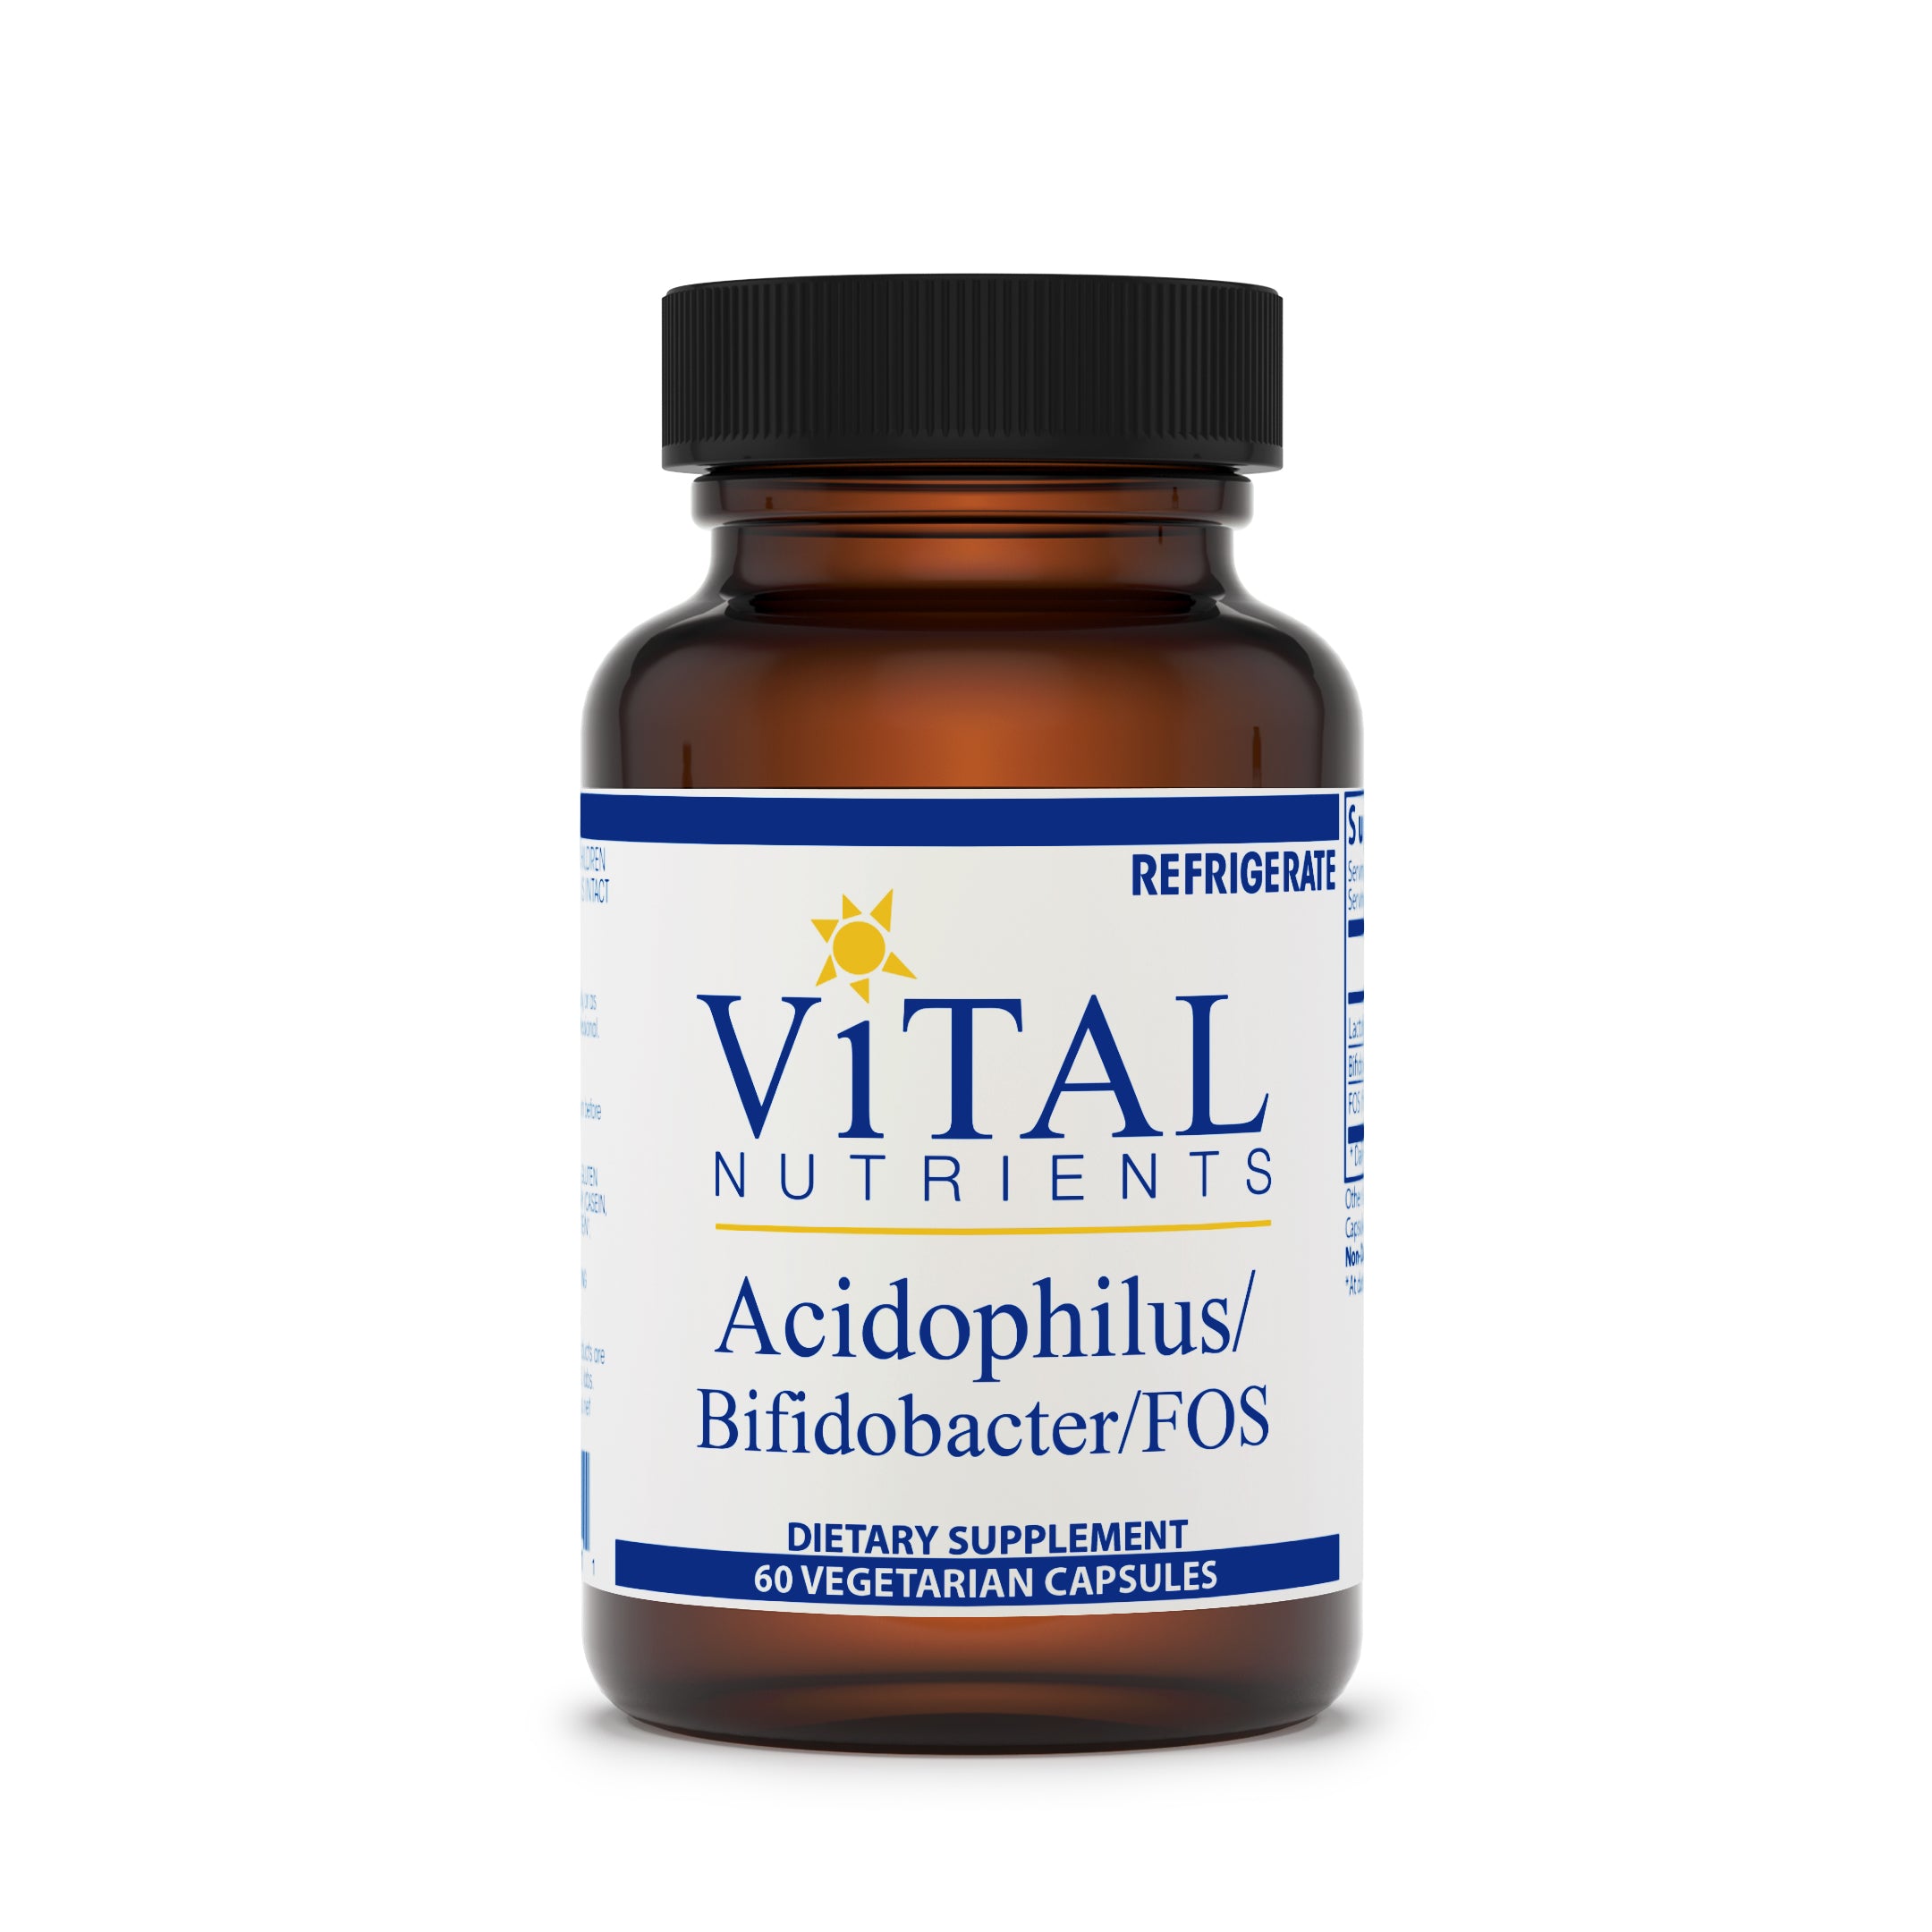 Acidophilus/Bifidobacter/FOS-Vital Nutrients